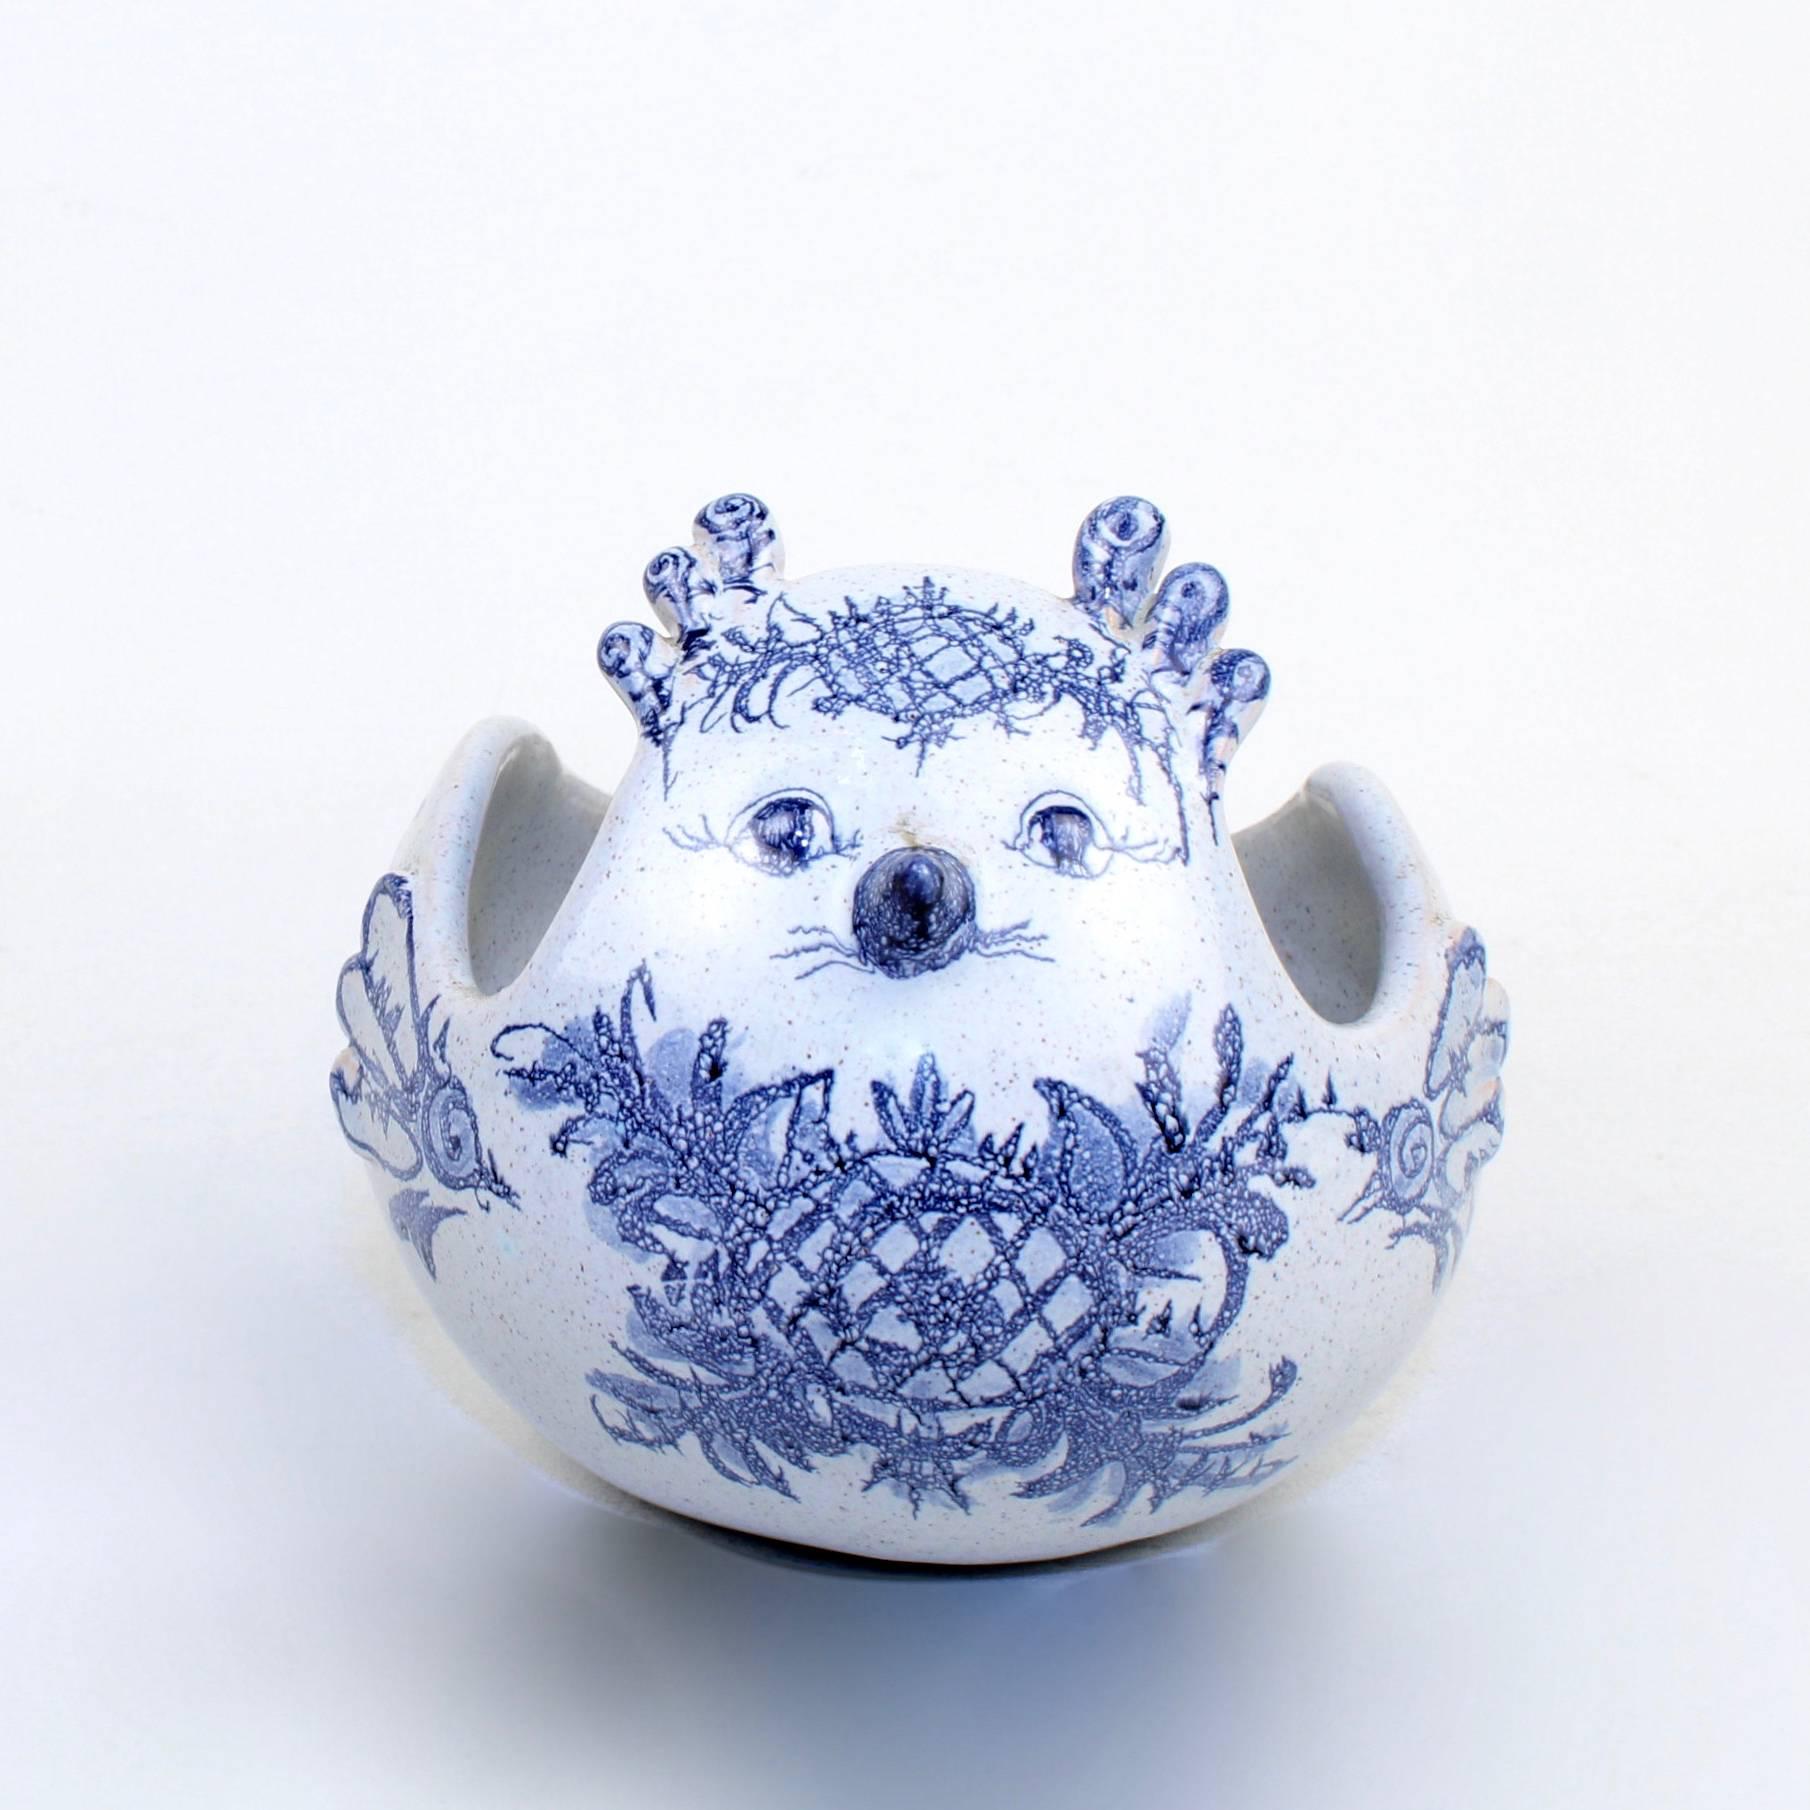 Un joli bol ou petite soupière en poterie d'atelier à décor bleu par Bjorn Wiinblad, ainsi que la cuillère correspondante. 

Signé et daté 1960 à la base.

Hauteur : environ 4 3/4 in.
Longueur de la cuillère : environ 8 in.

Les articles